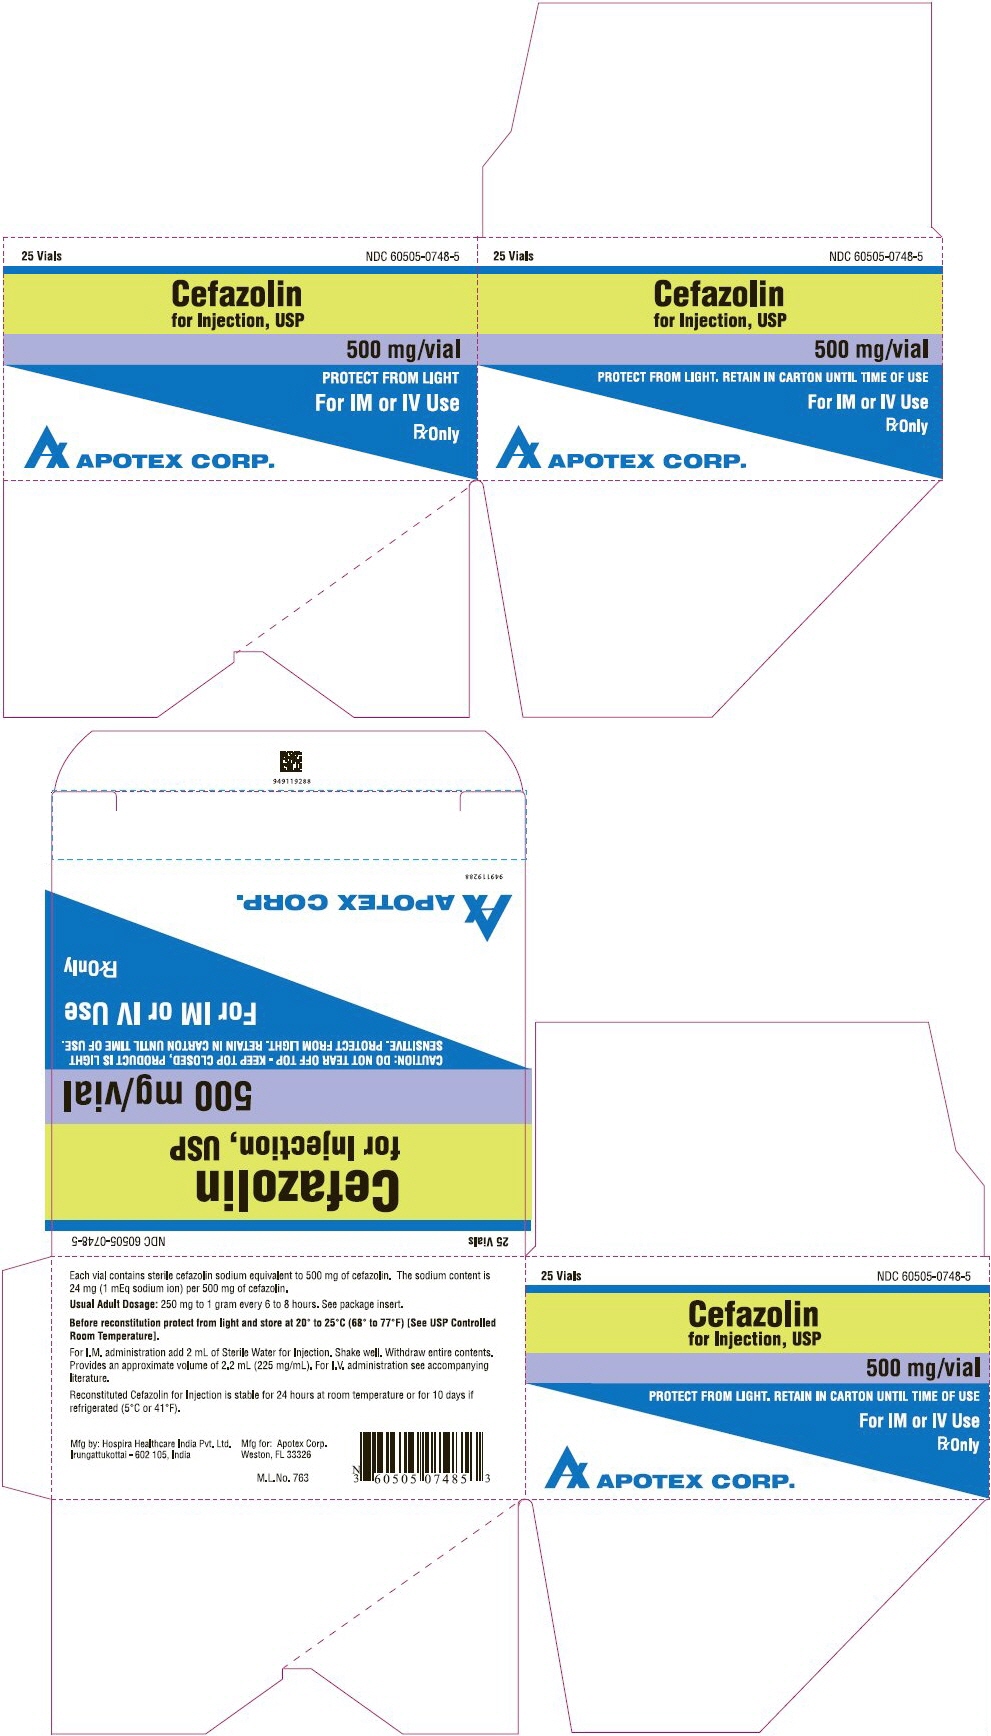 Principal Display Panel - 500 mg 25 Vial Carton